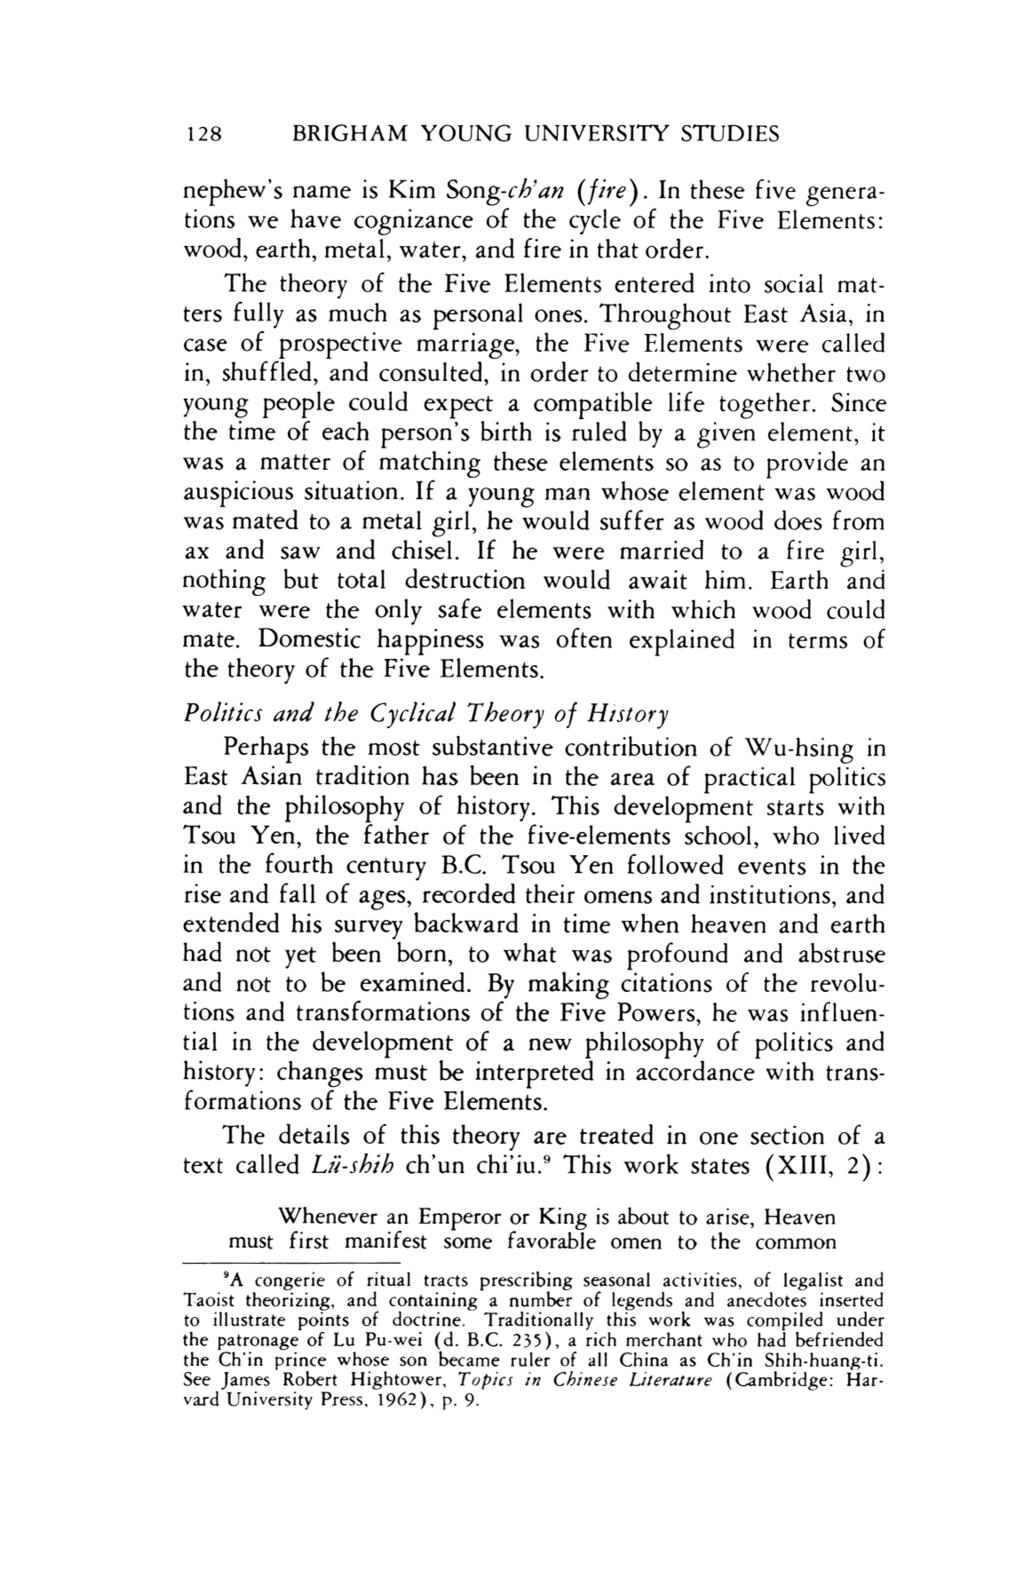 BYU udies Quarerly, Vol. 6, Iss. [965], Ar.